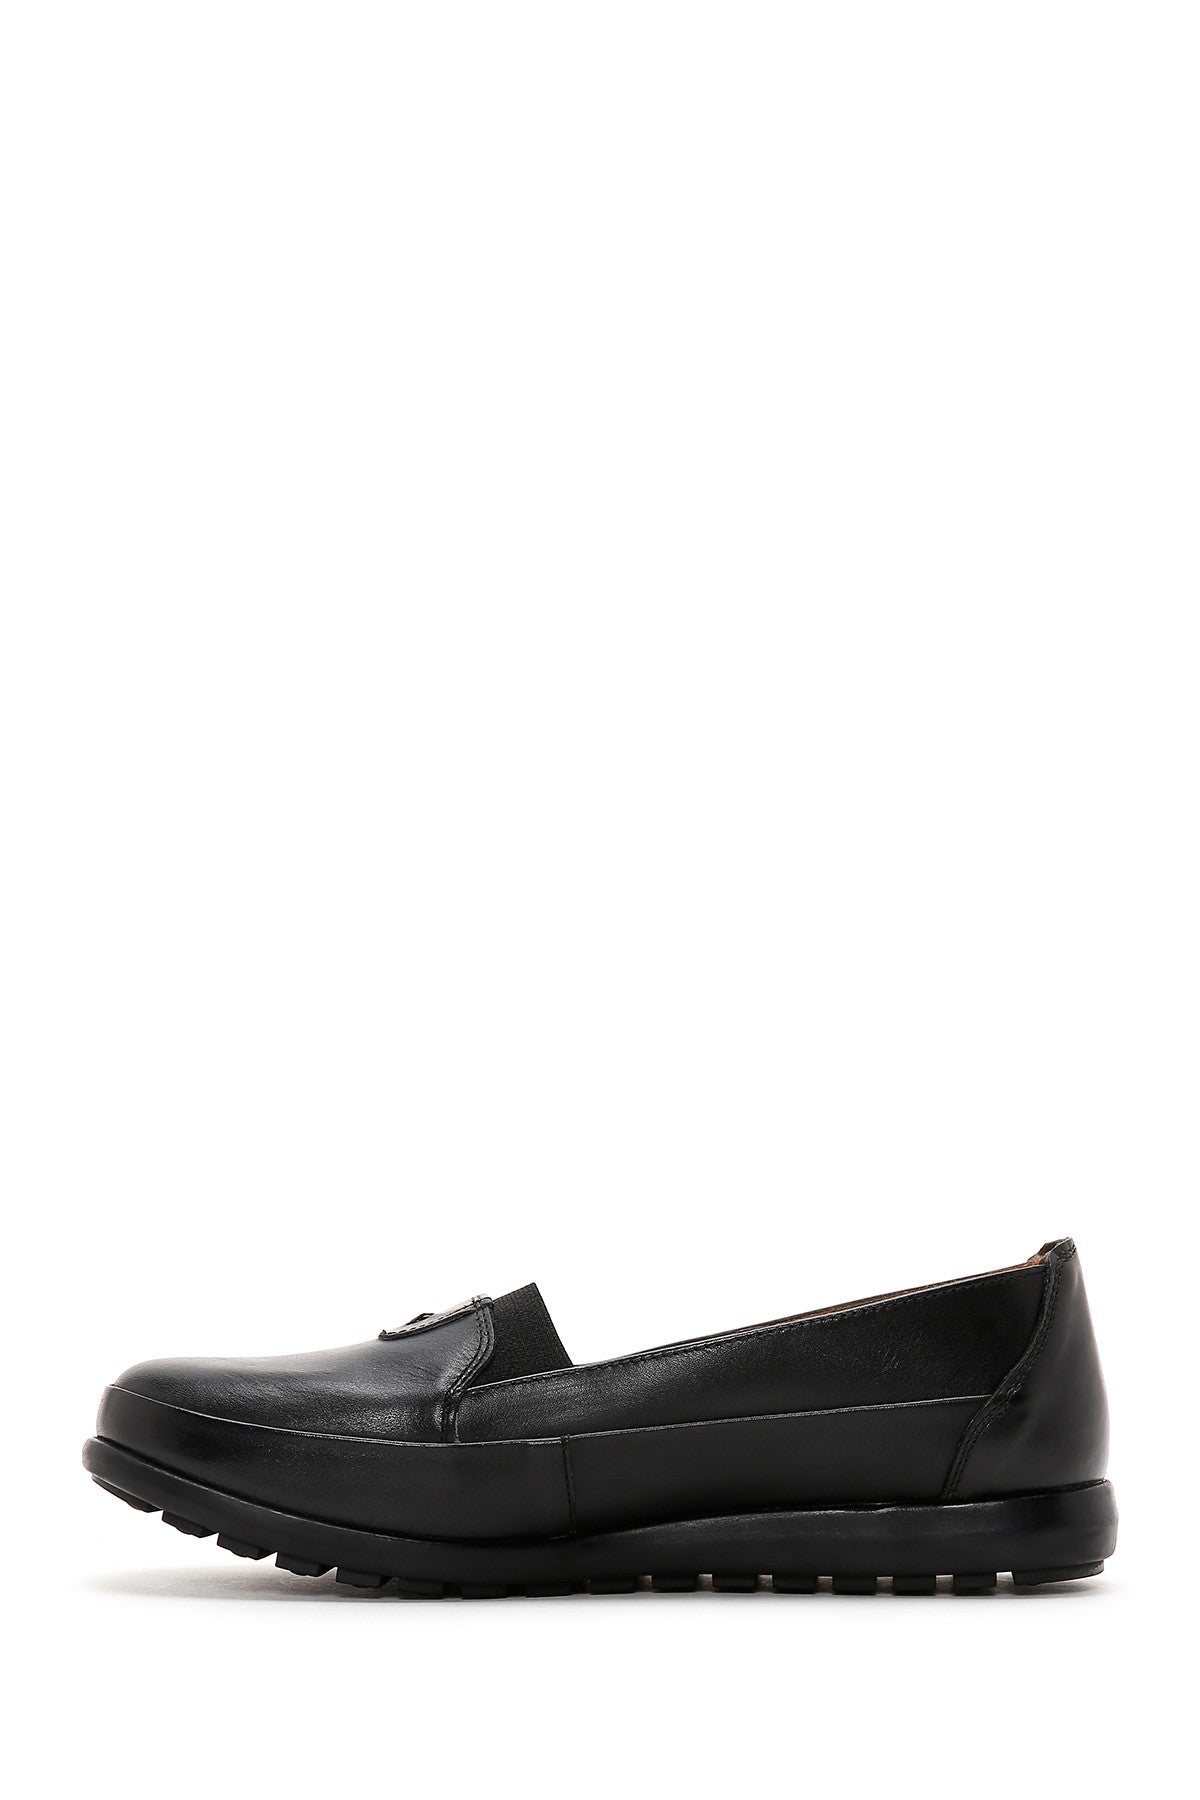 Kadın Siyah Deri Comfort Ayakkabı